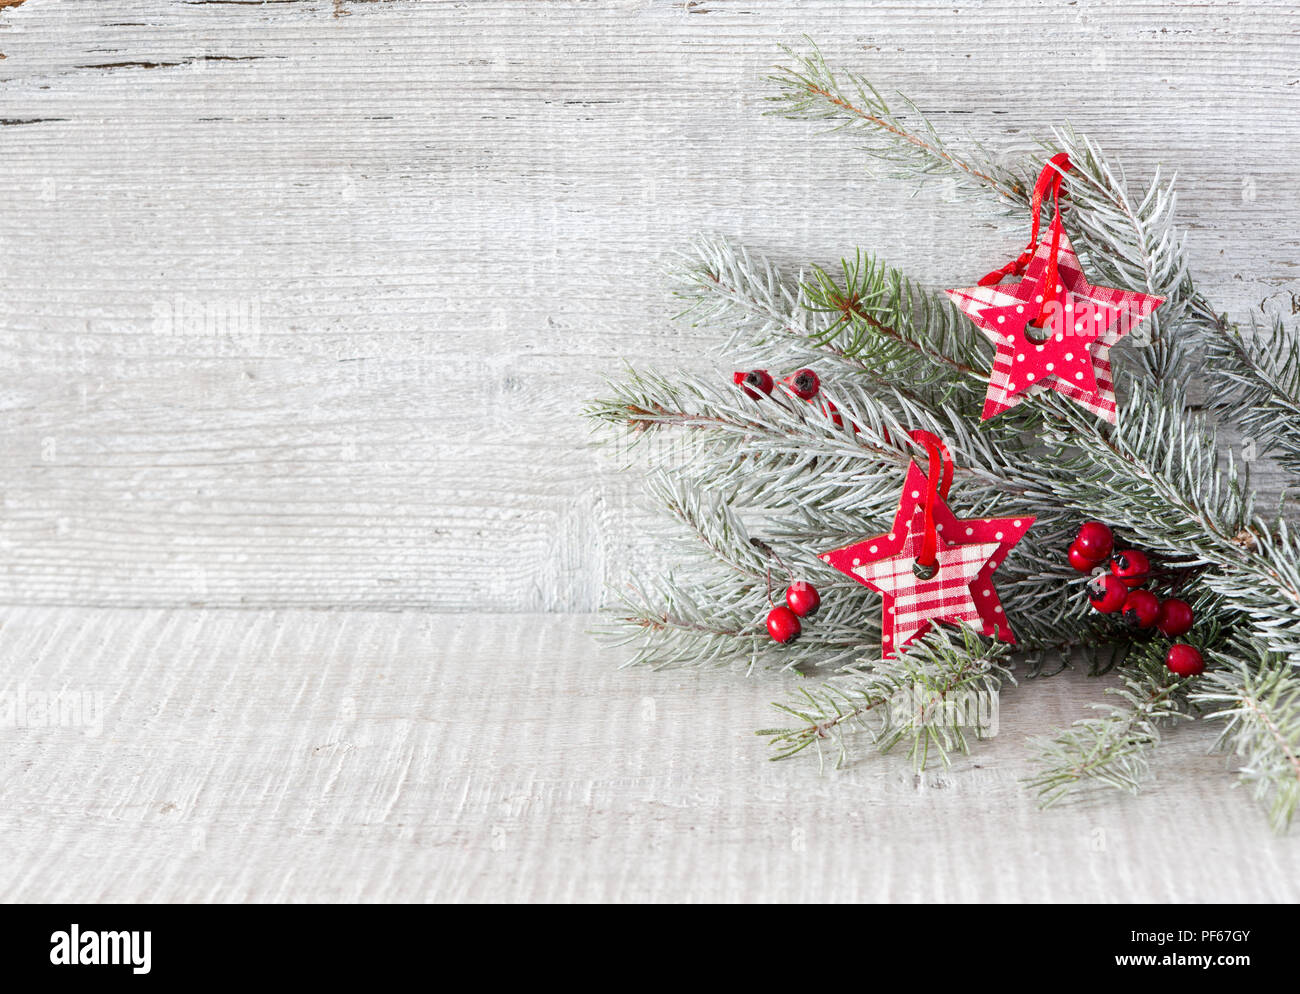 Tanne Zweig mit Weihnachtsschmuck auf weißen Holzmöbeln im Landhausstil Hintergrund. Stockfoto